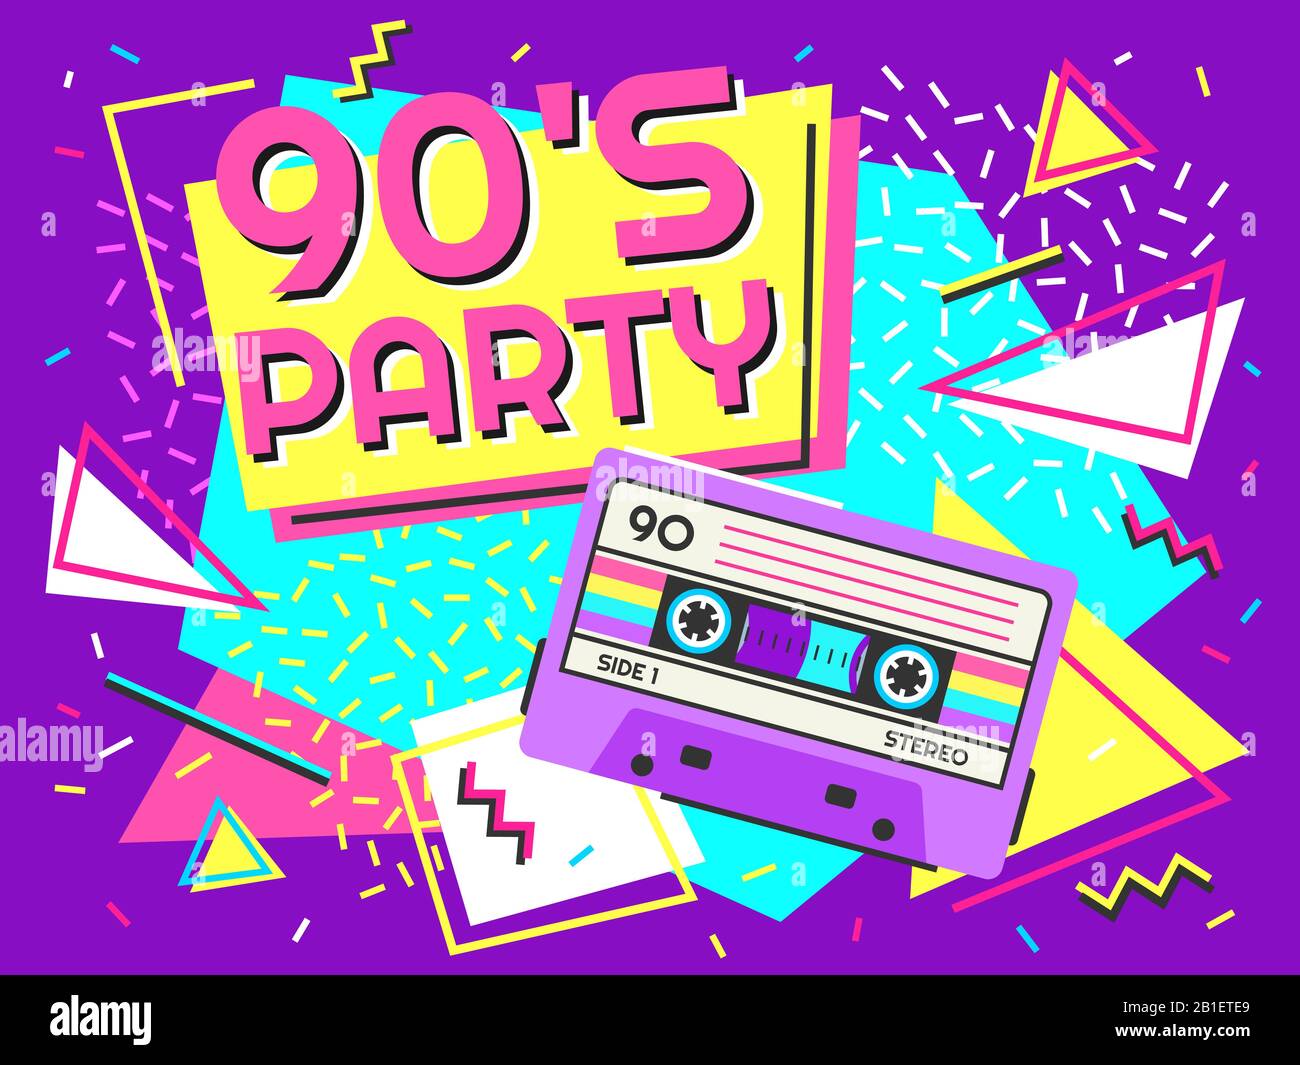 Sắp có một buổi tiệc nhạc retro và bạn đang tìm kiếm một poster hoàn hảo? Đừng lo lắng, hãy xem ngay mẫu poster retro tiệc nhạc đầy màu sắc và độc đáo này.